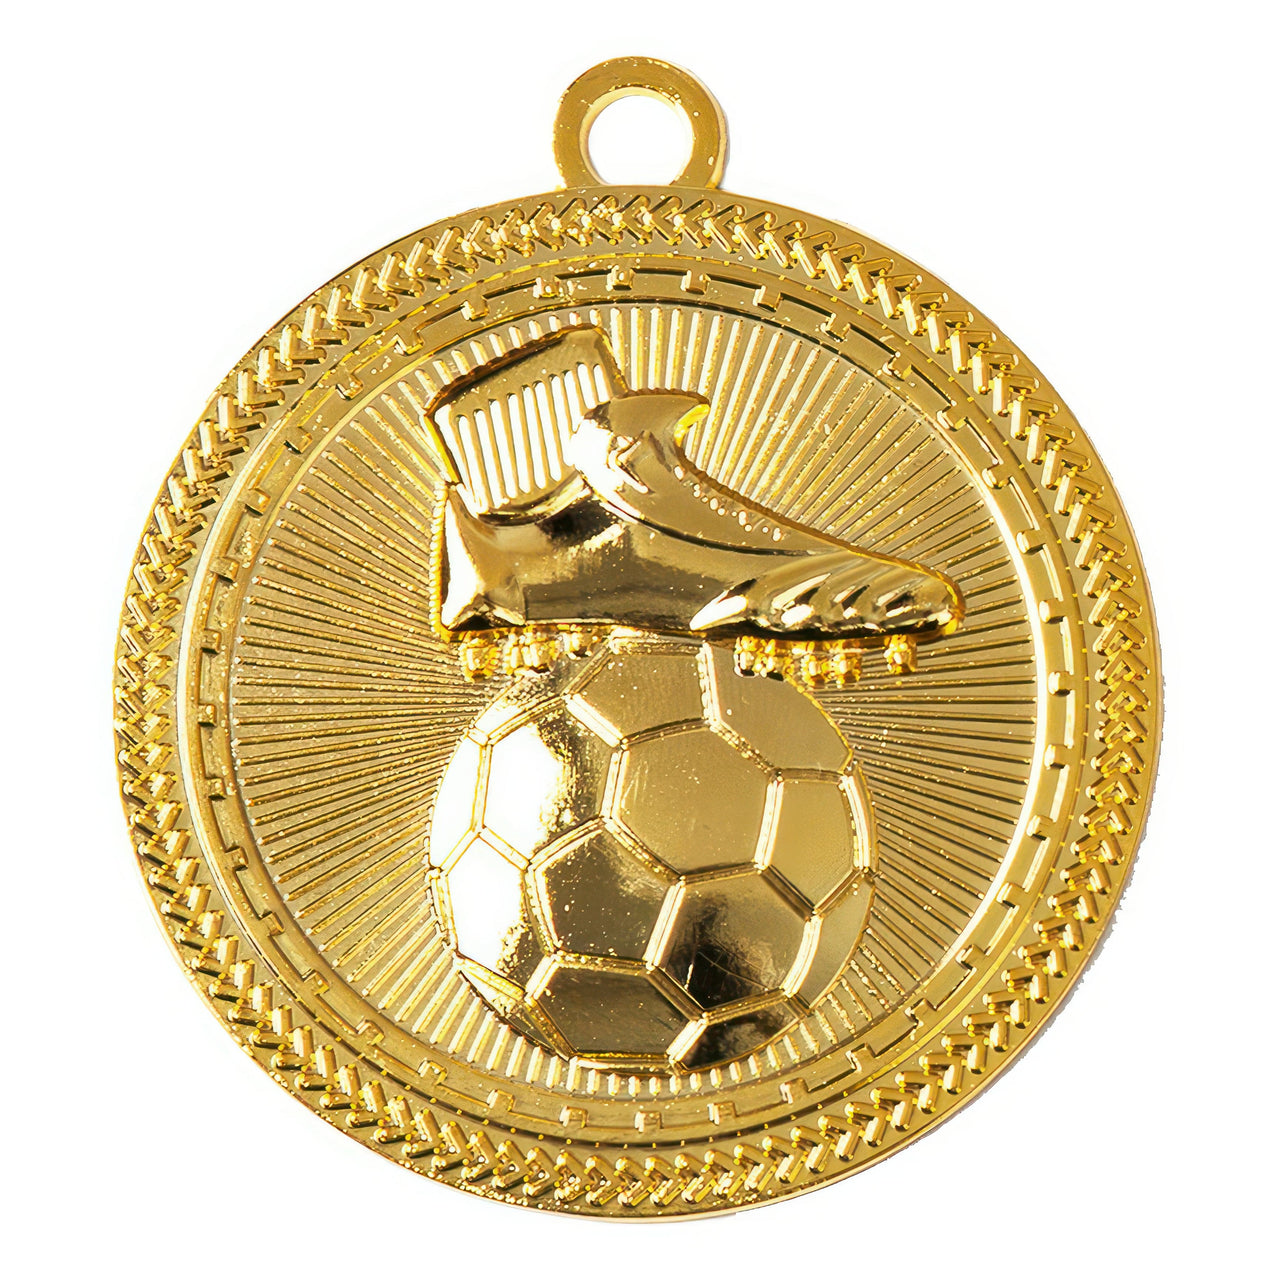 Goldfarbene Fußballmedaille mit exklusivem Design, dargestellt ein erhabenes Bild des Fußballschuhs mit Ball Medaillen Lübeck 50 mm PK79238 von POMEKI.